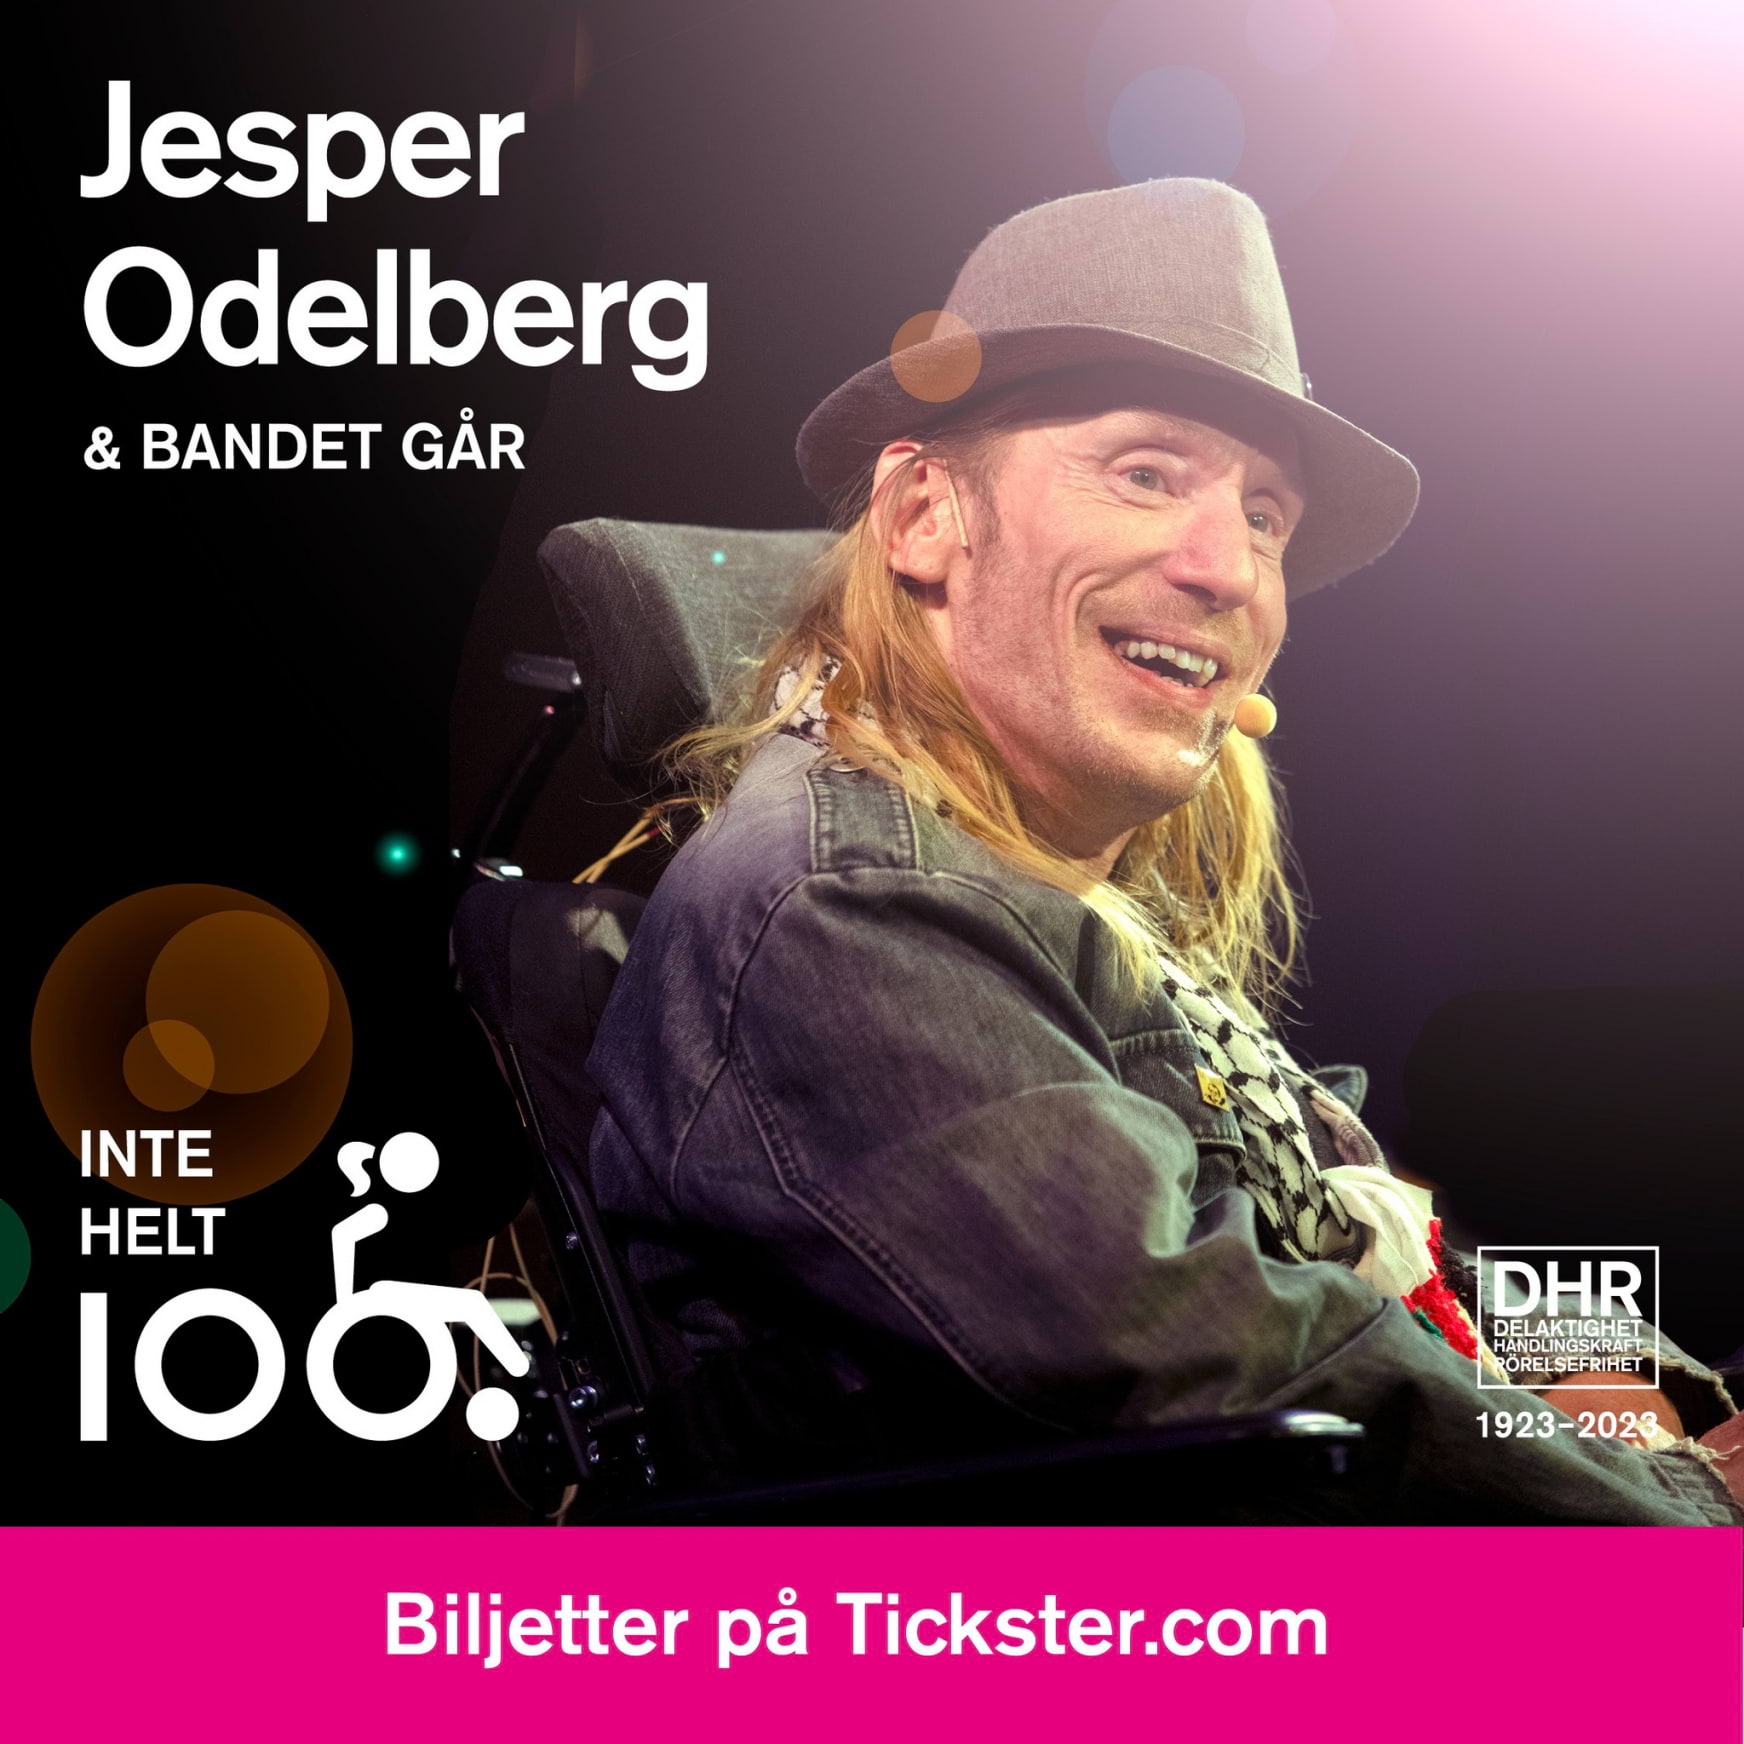 Jesper Odelberg och Bandet Går: Inte helt 100